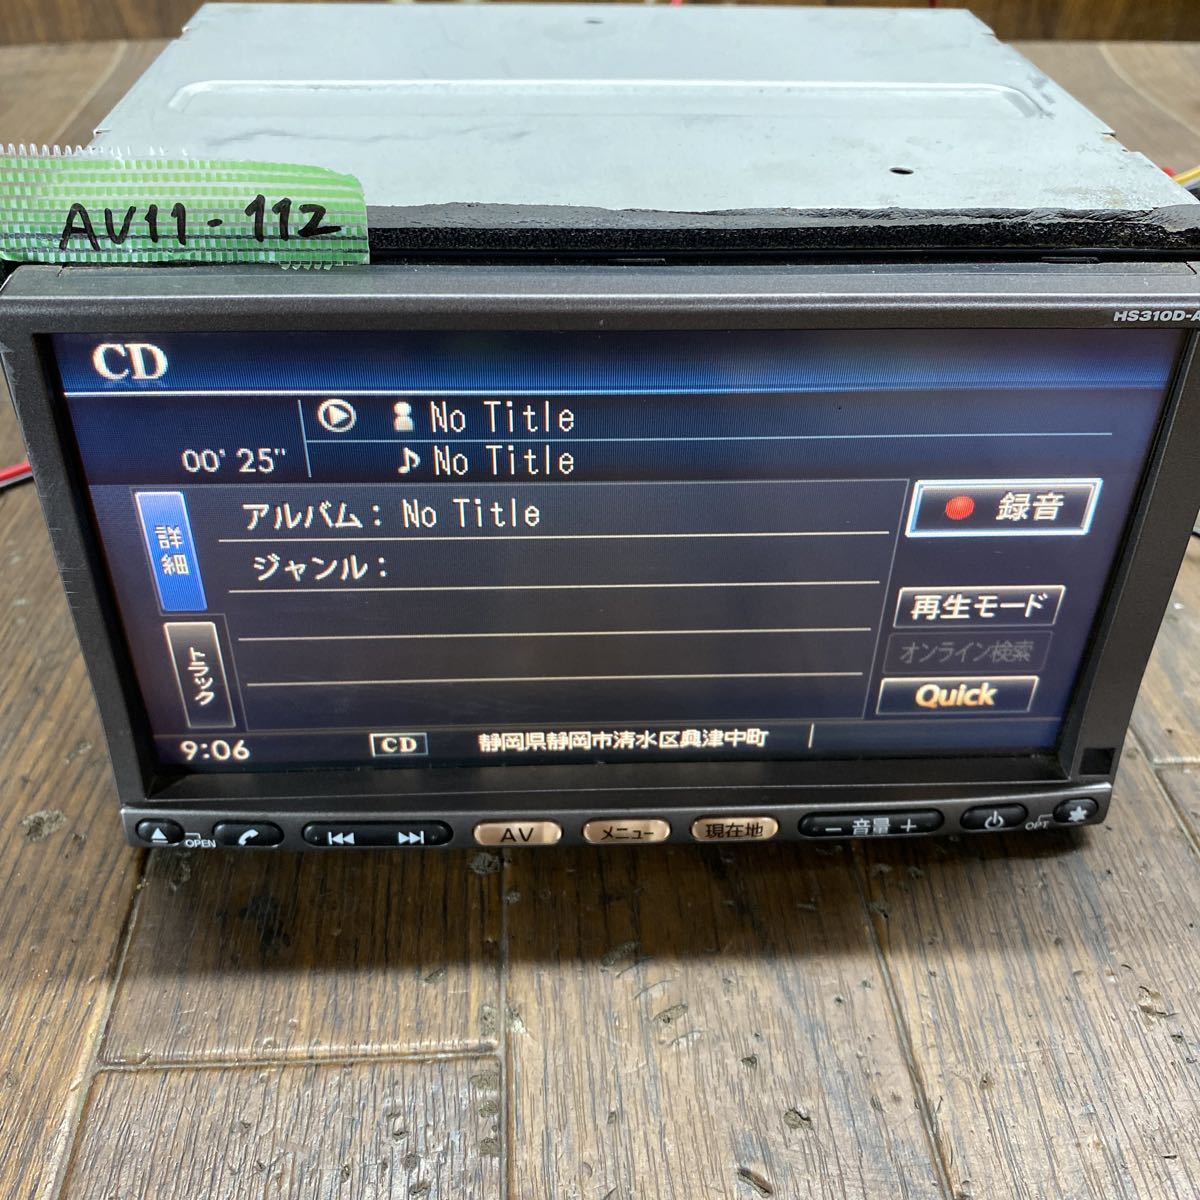 AV11-112 激安 カーナビ 日産 HS310D-A B8260-7999G SANYO NVA-HD7310F HDD CD DVD Bluetooth 確認用配線使用 簡易動作確認済 中古現状品_画像4